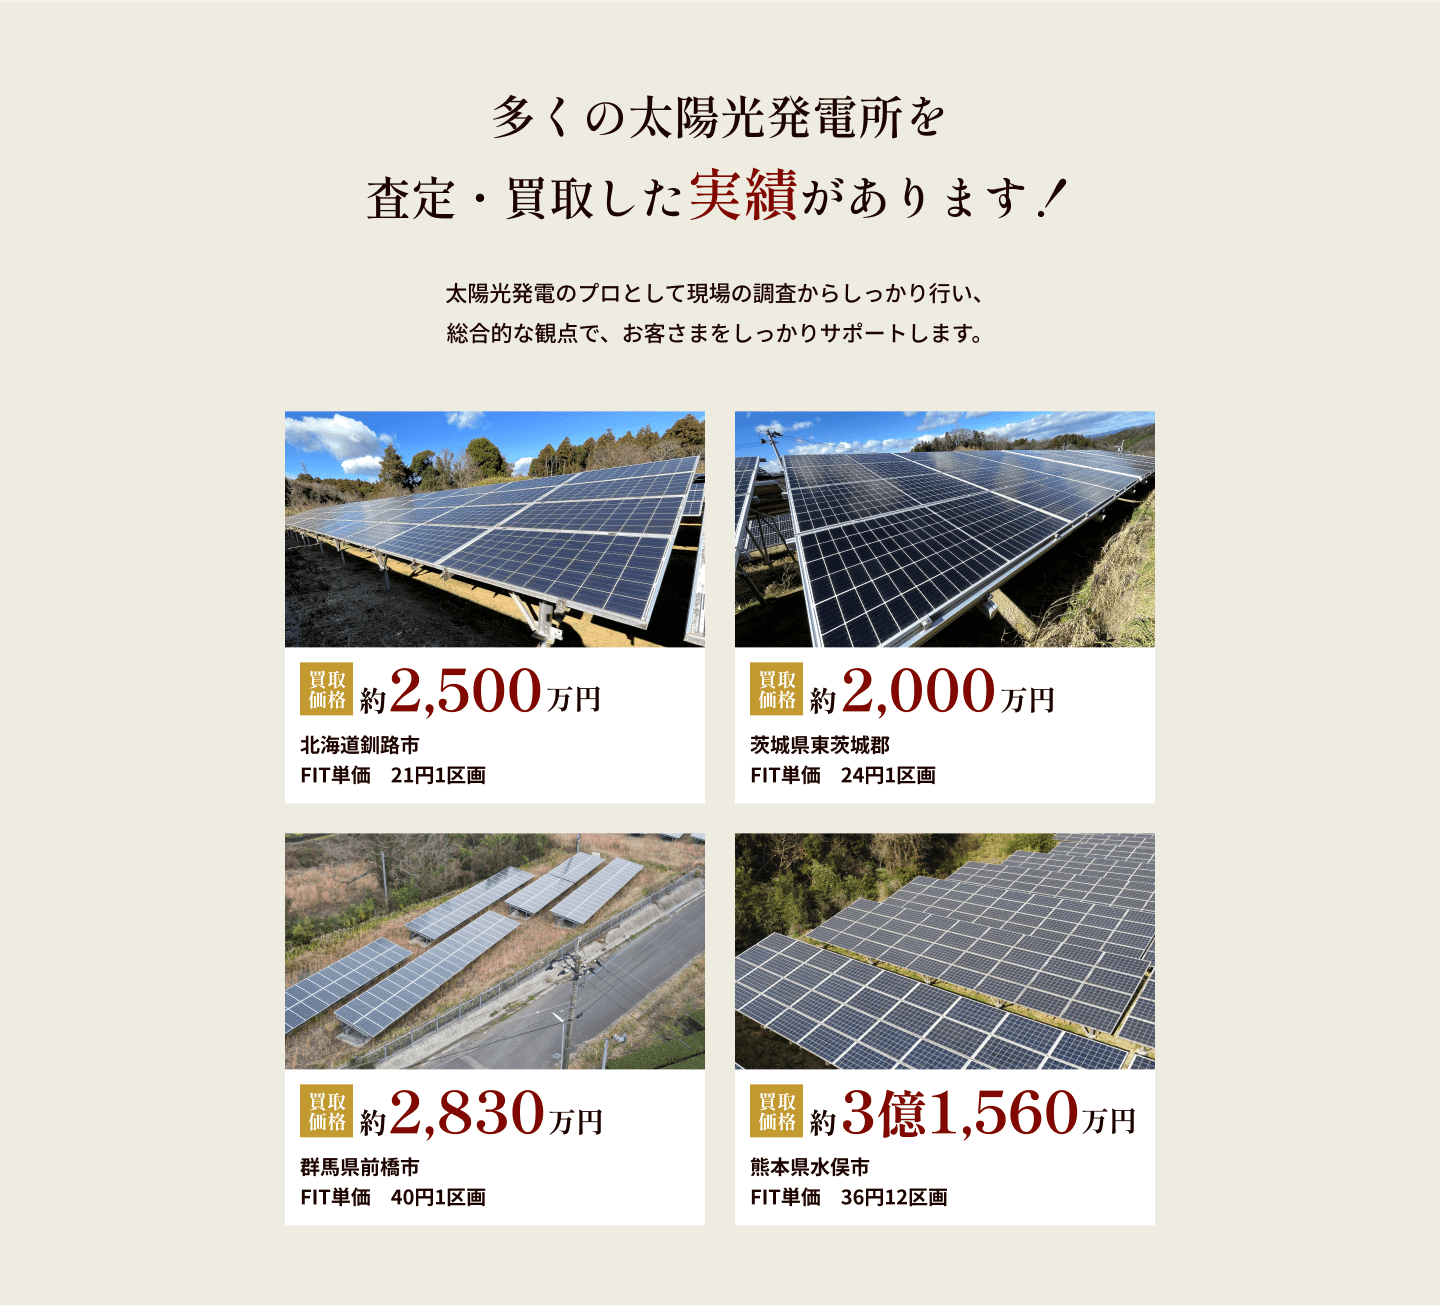 多くの太陽光発電所を査定・買取した実績があります！